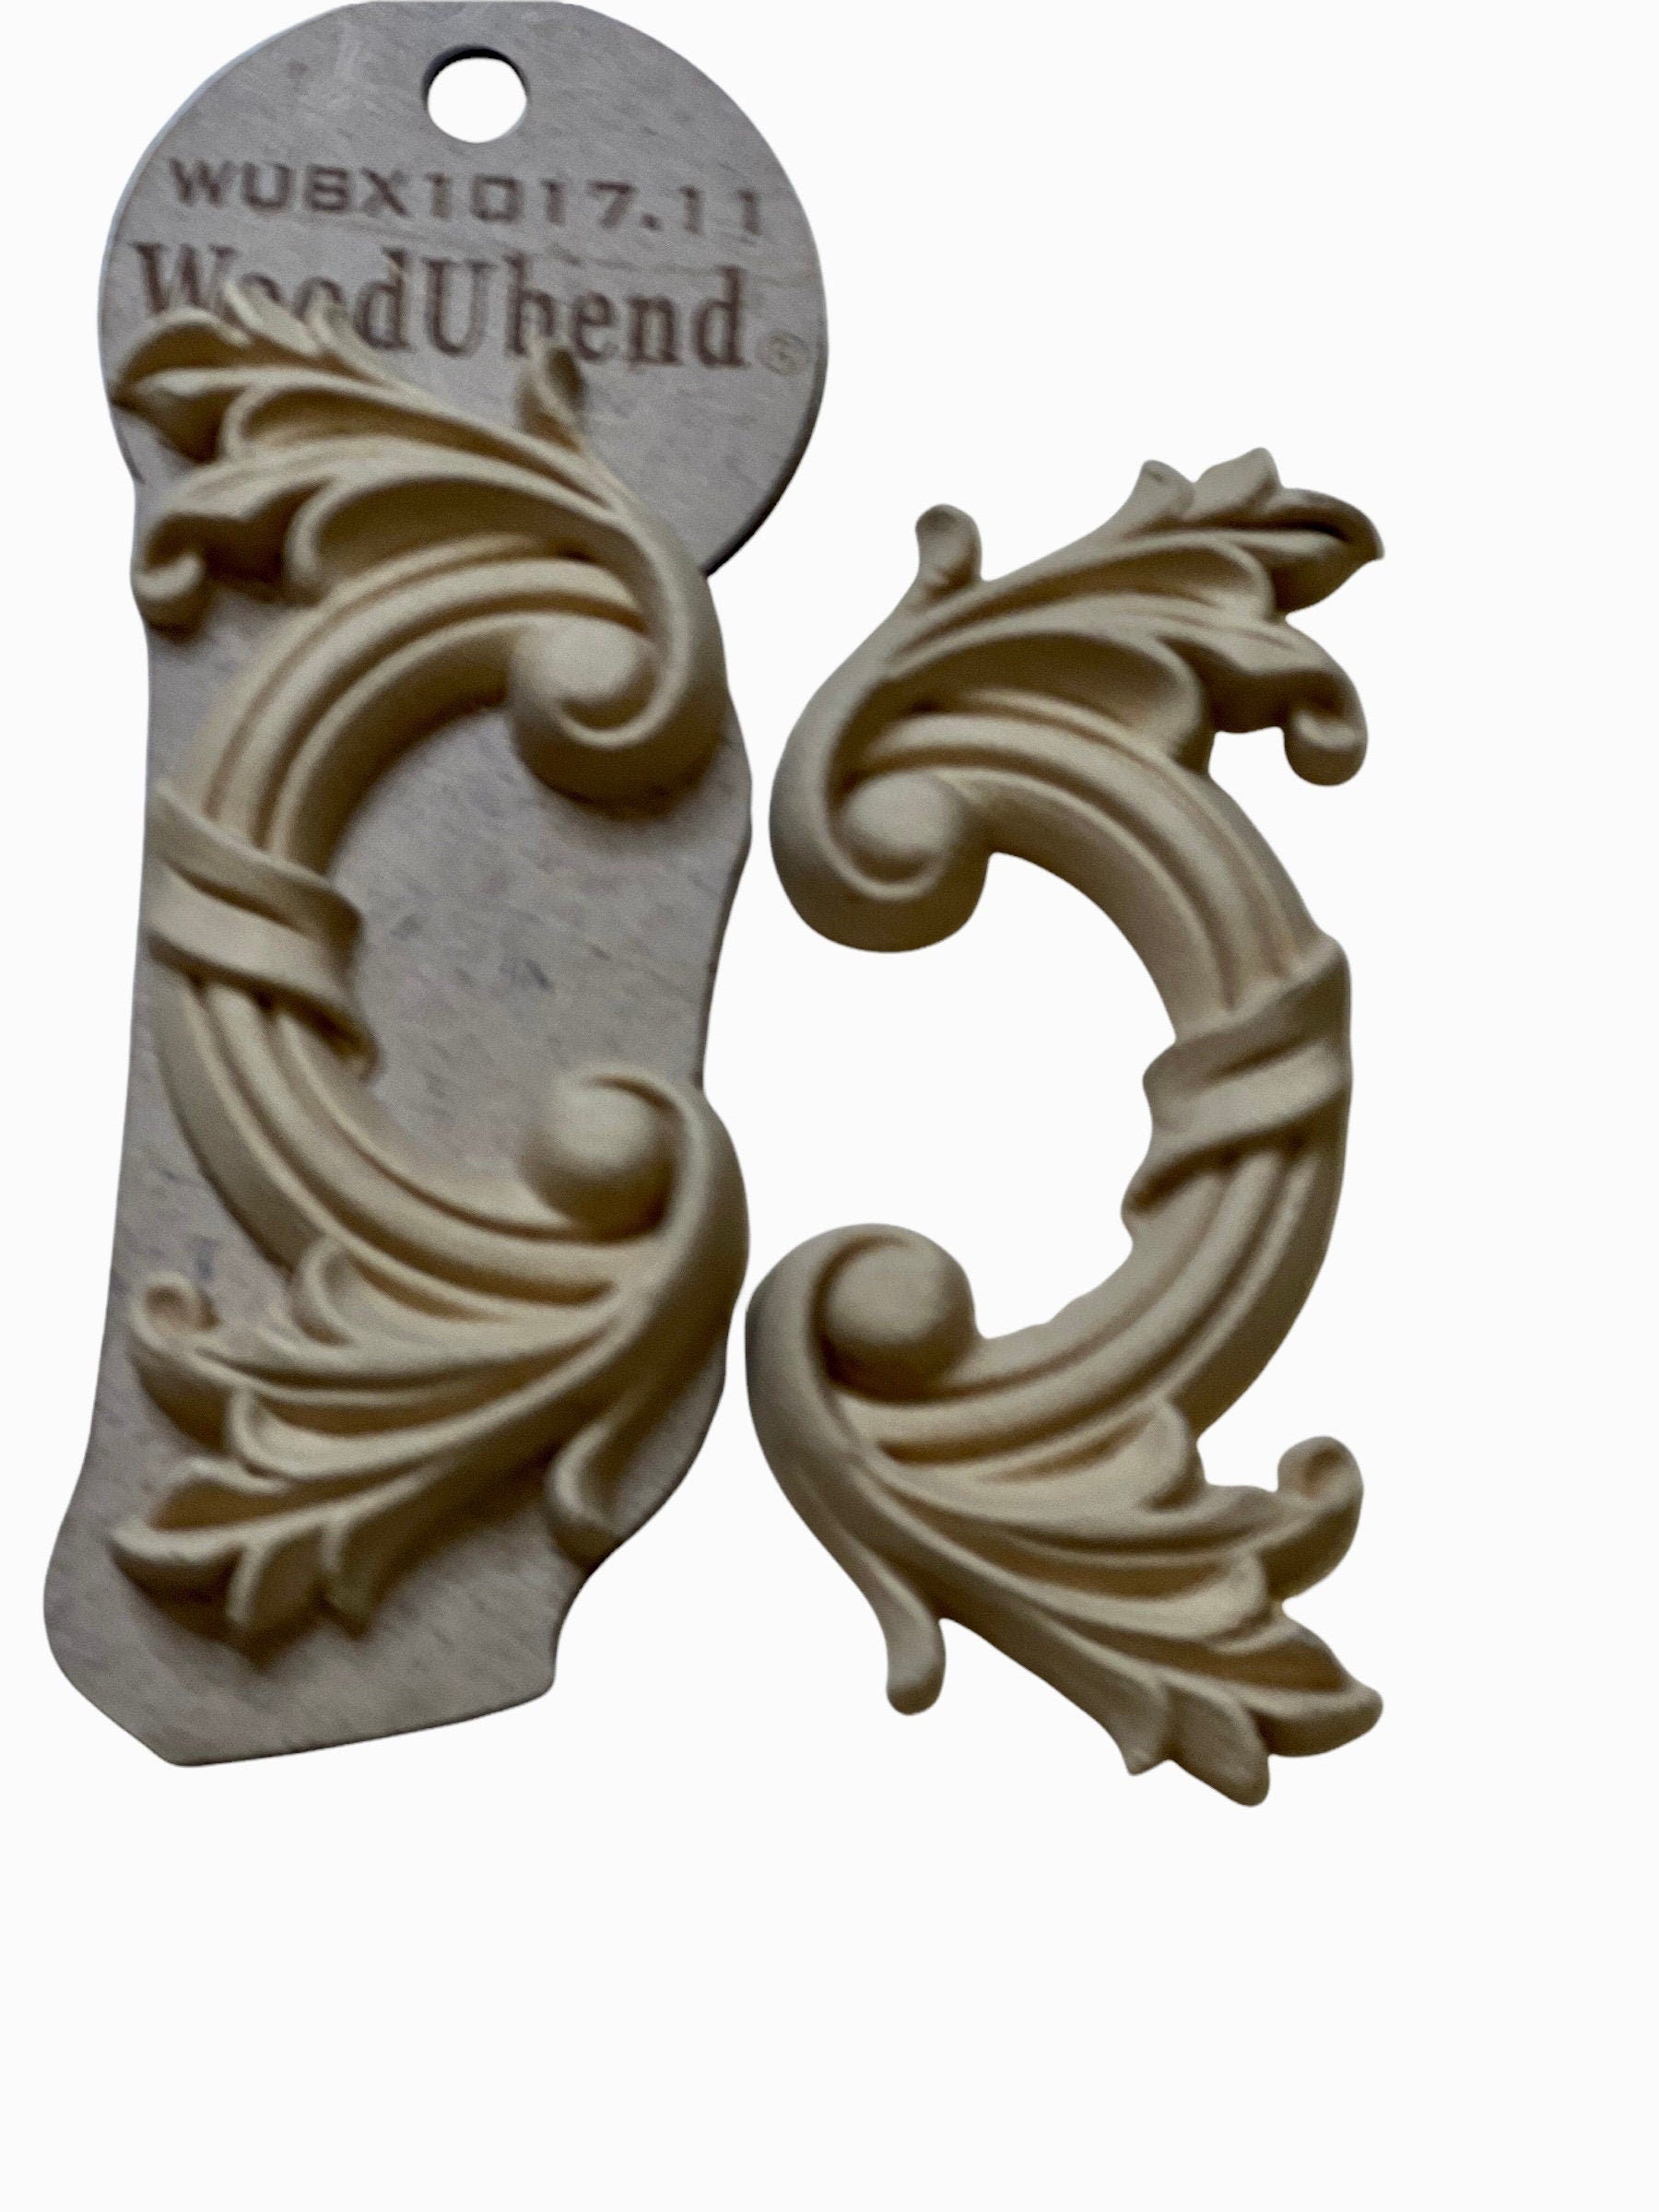 Woodubend scroll pair bendable moulding 1017.11